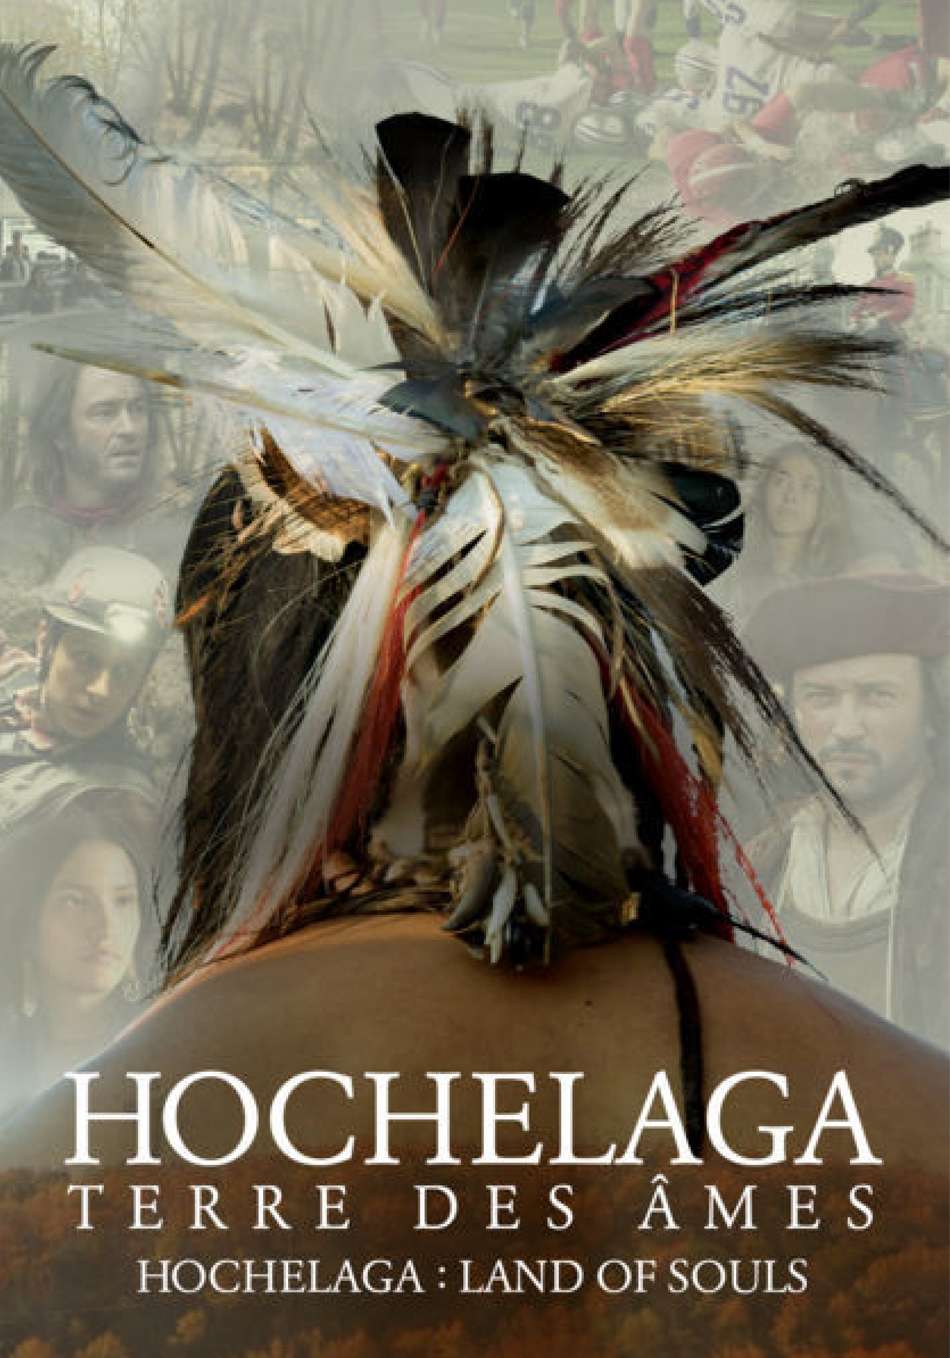 Hochelaga, terre des âmes HOCHELAGA, ΓΗ ΤΩΝ ΠΝΕΥΜAΤΩΝ Poster